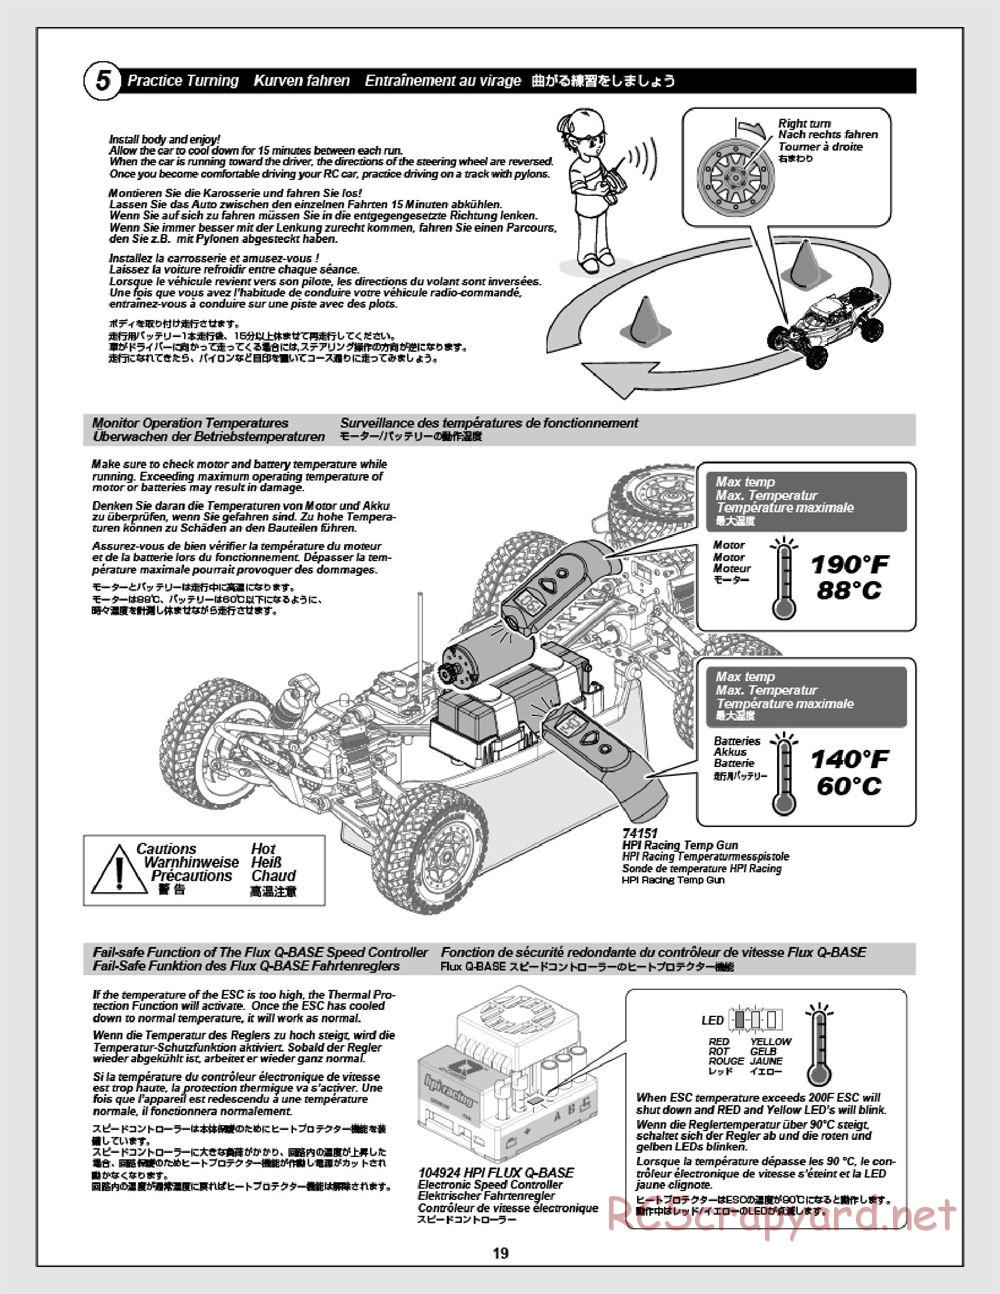 HPI - Apache C1 Flux - Manual - Page 19